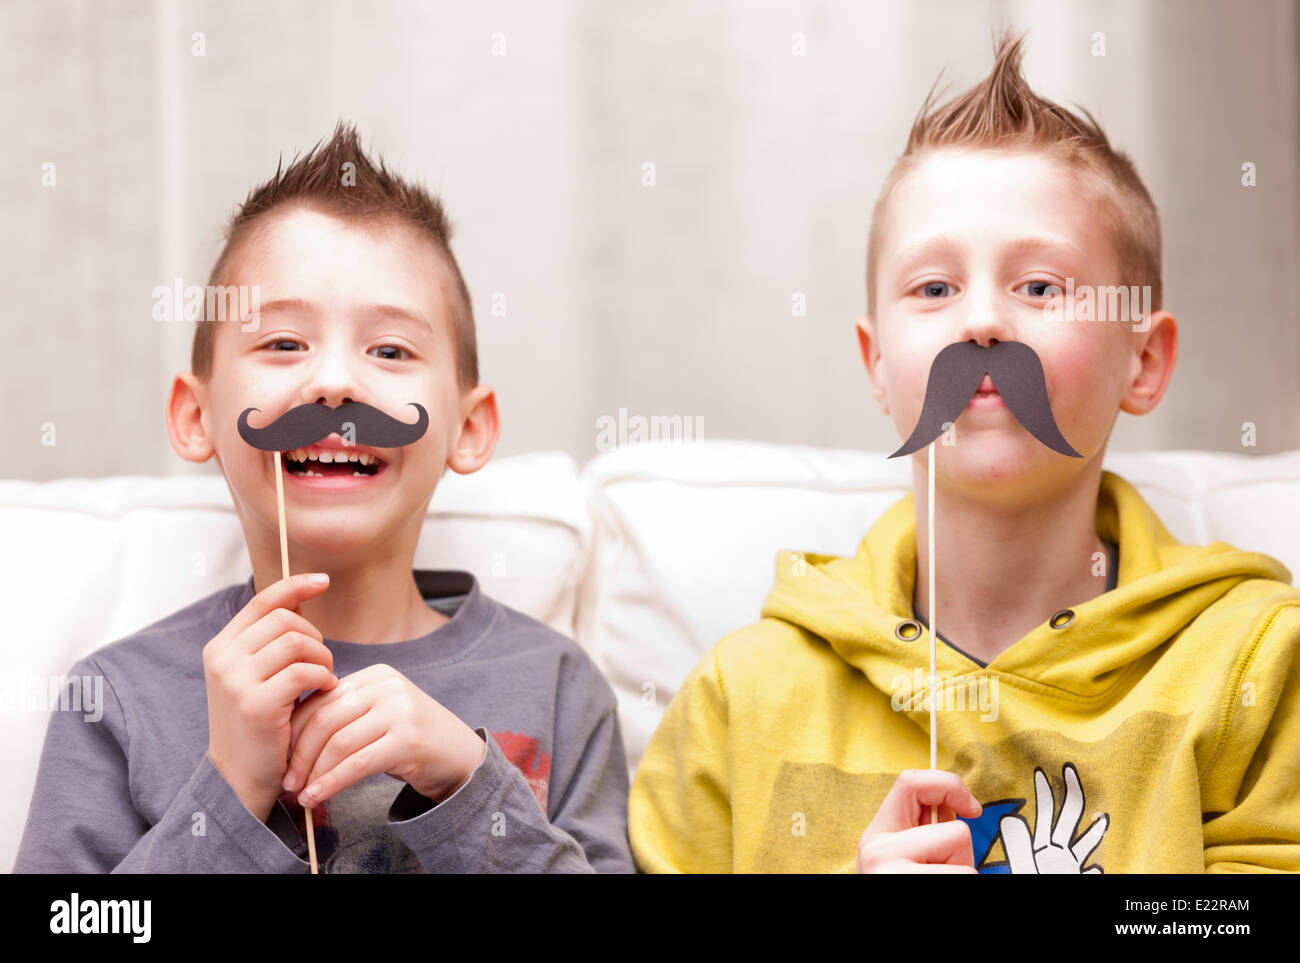 Deux enfants faire des grimaces avec de fausses moustaches Banque D'Images